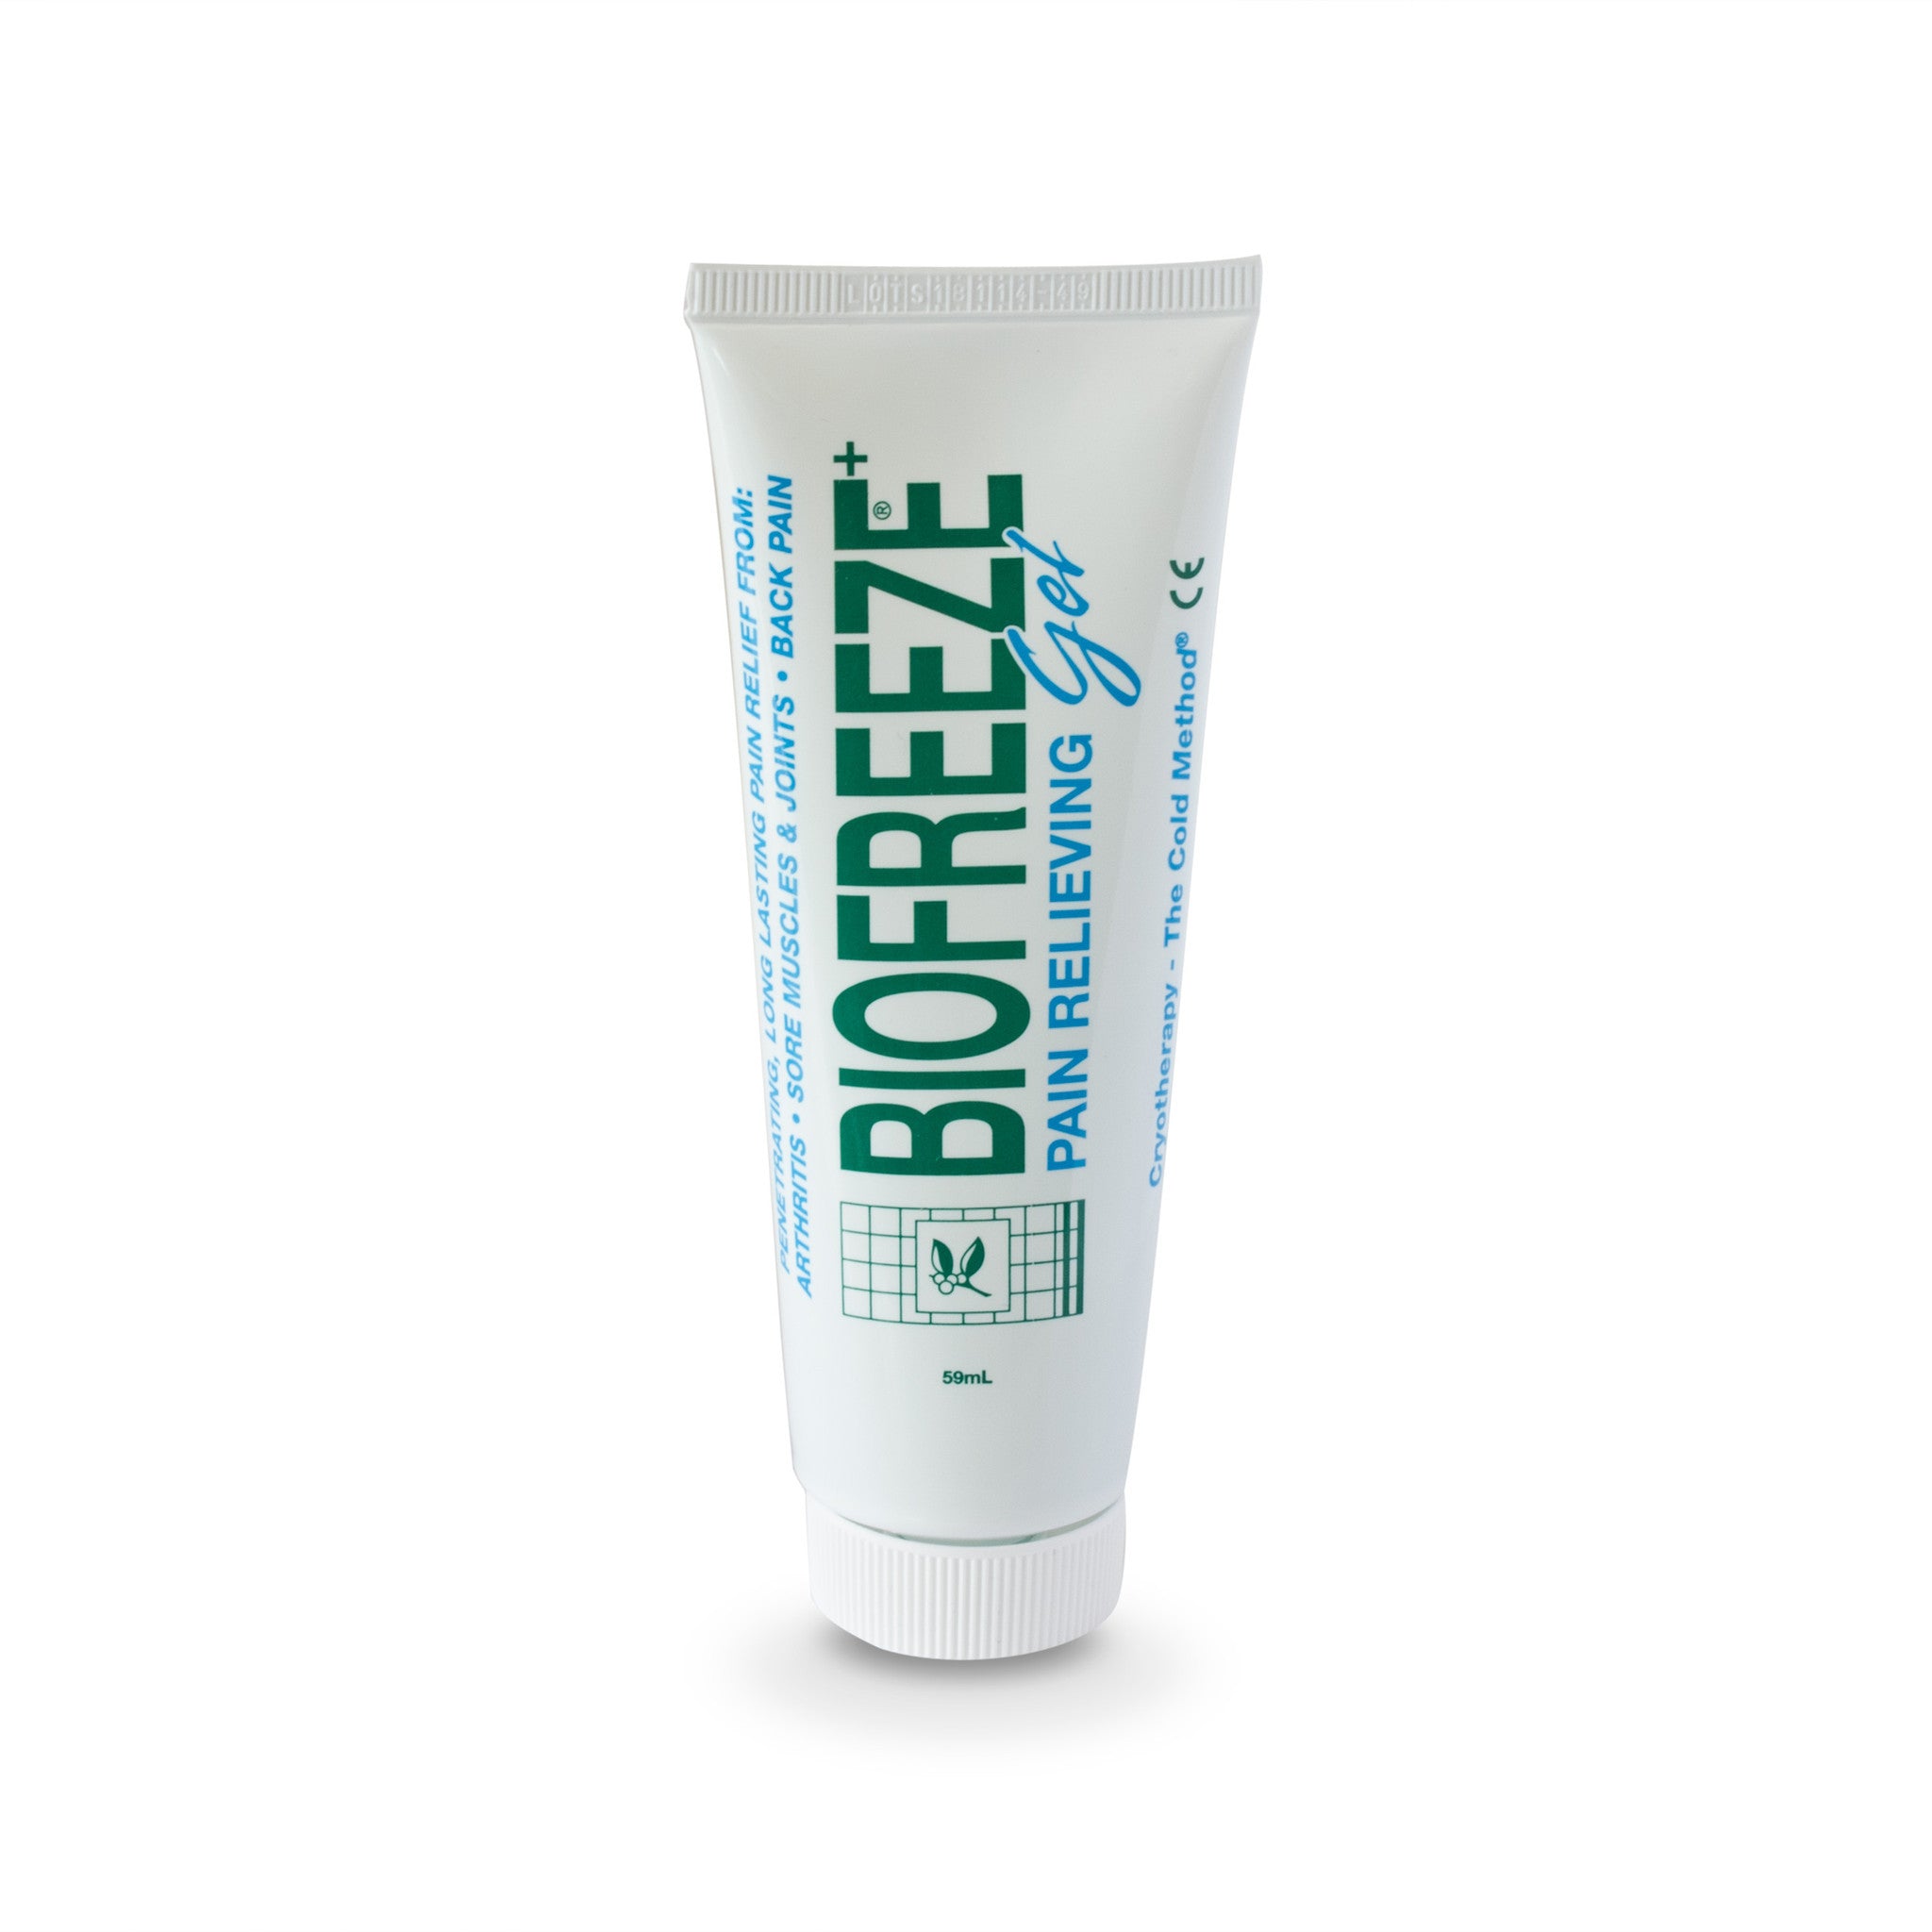 Biofreeze Pain-Relief Gel